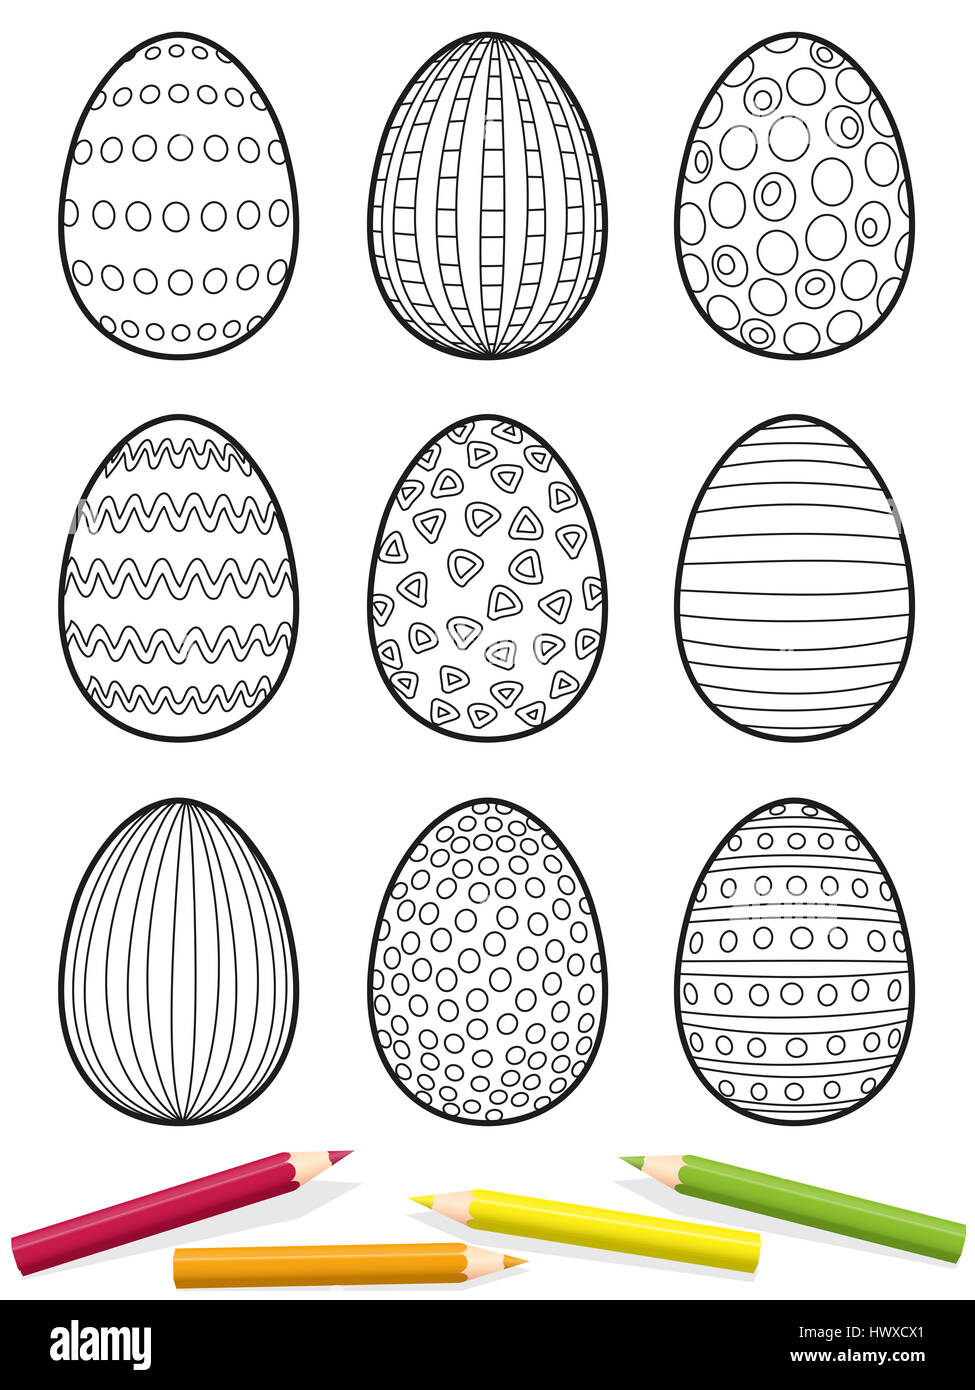 Ostereier färben Seite - neun Eiern mit verschiedenen Mustern zu färbenden - isoliert auf weißem Hintergrund. Stockfoto